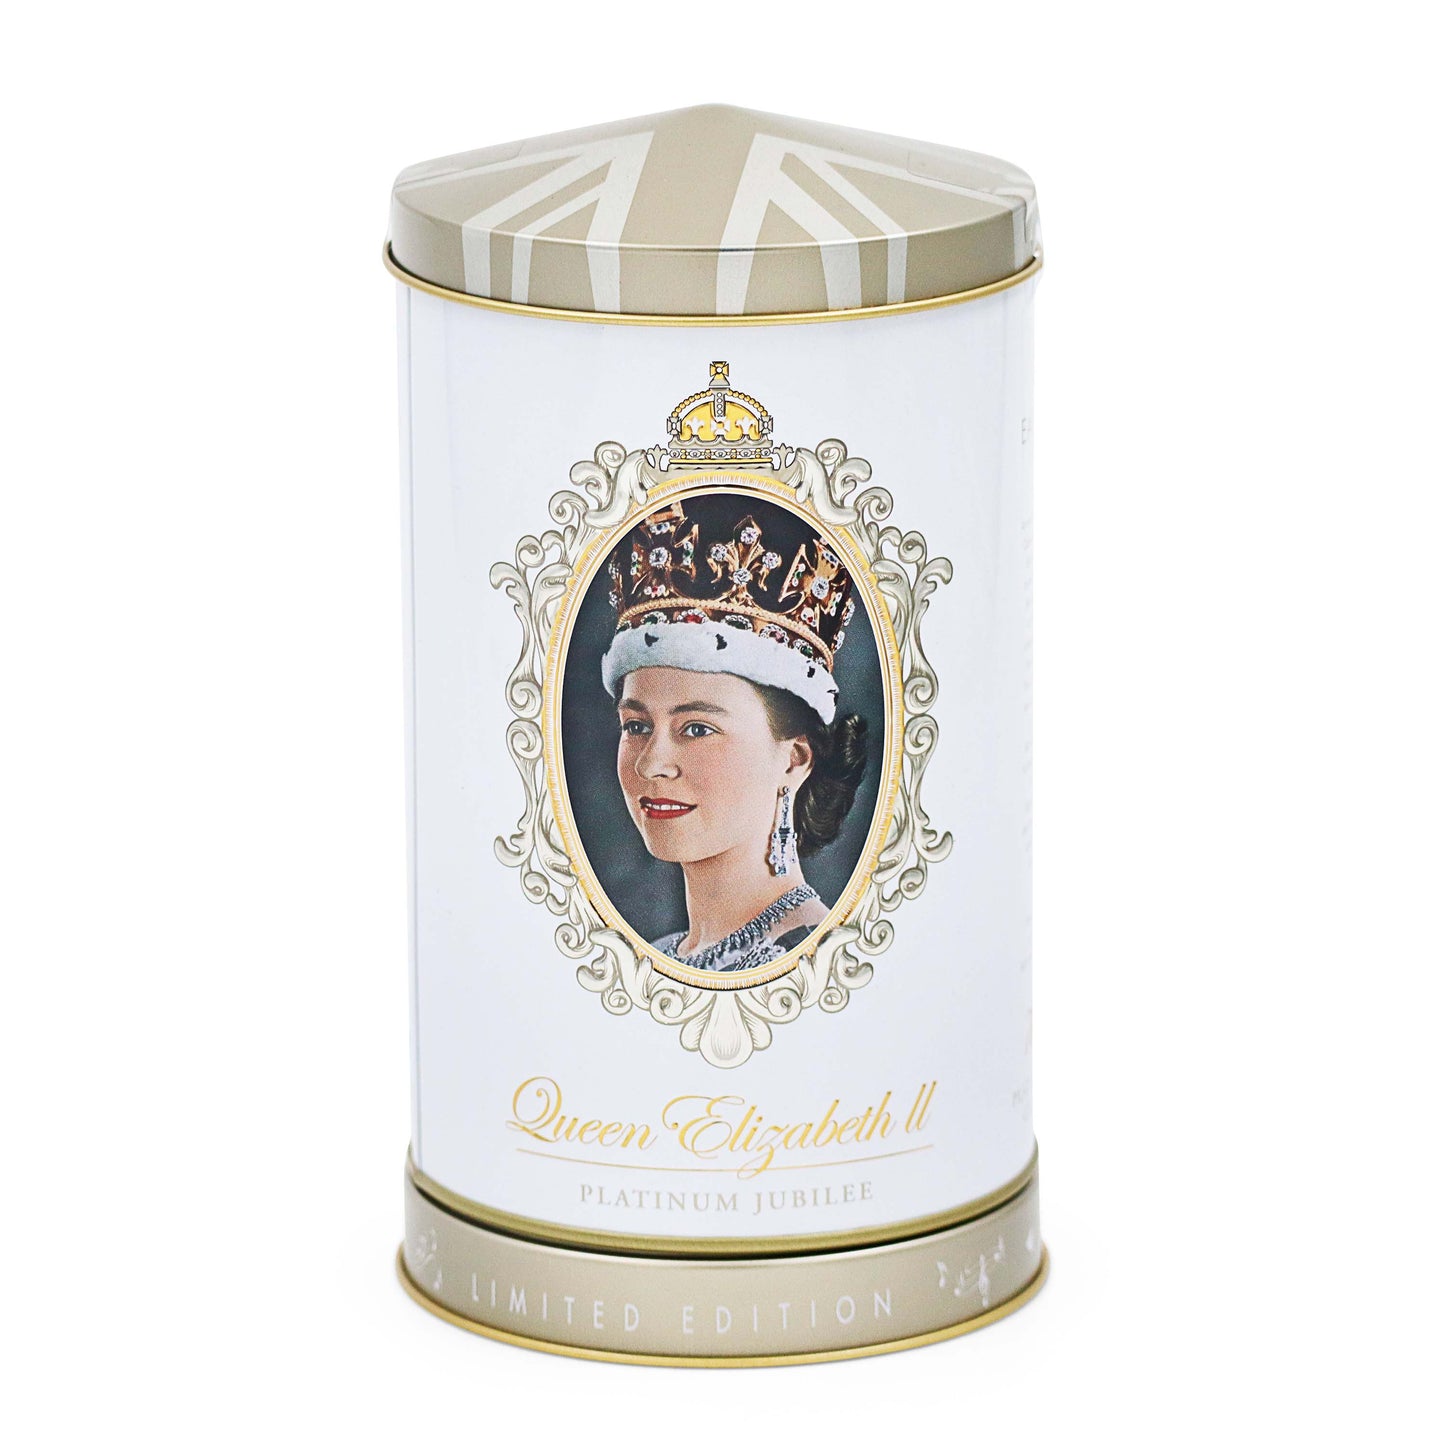 Queen Elizabeth II Musical Tea Caddy Gift